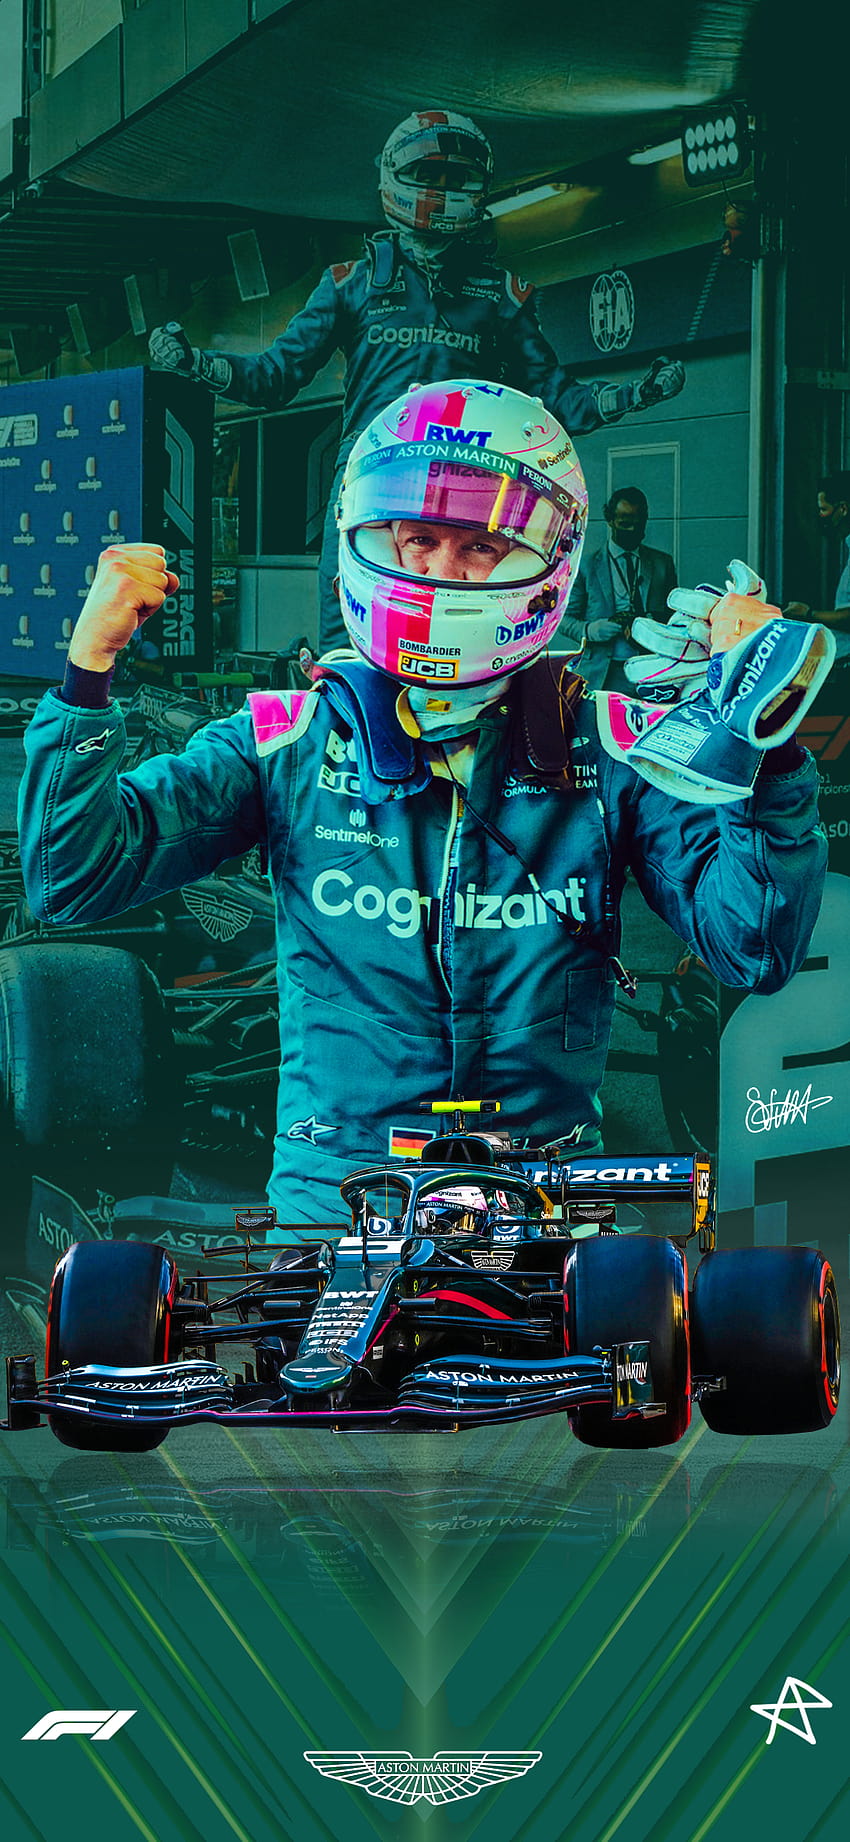 세바스찬 베텔 2021 아제르바이잔 Gp . Aston Martin Seb과 함께 1위 연단에 오른 것을 축하합니다! : r/formula1 HD 전화 배경 화면